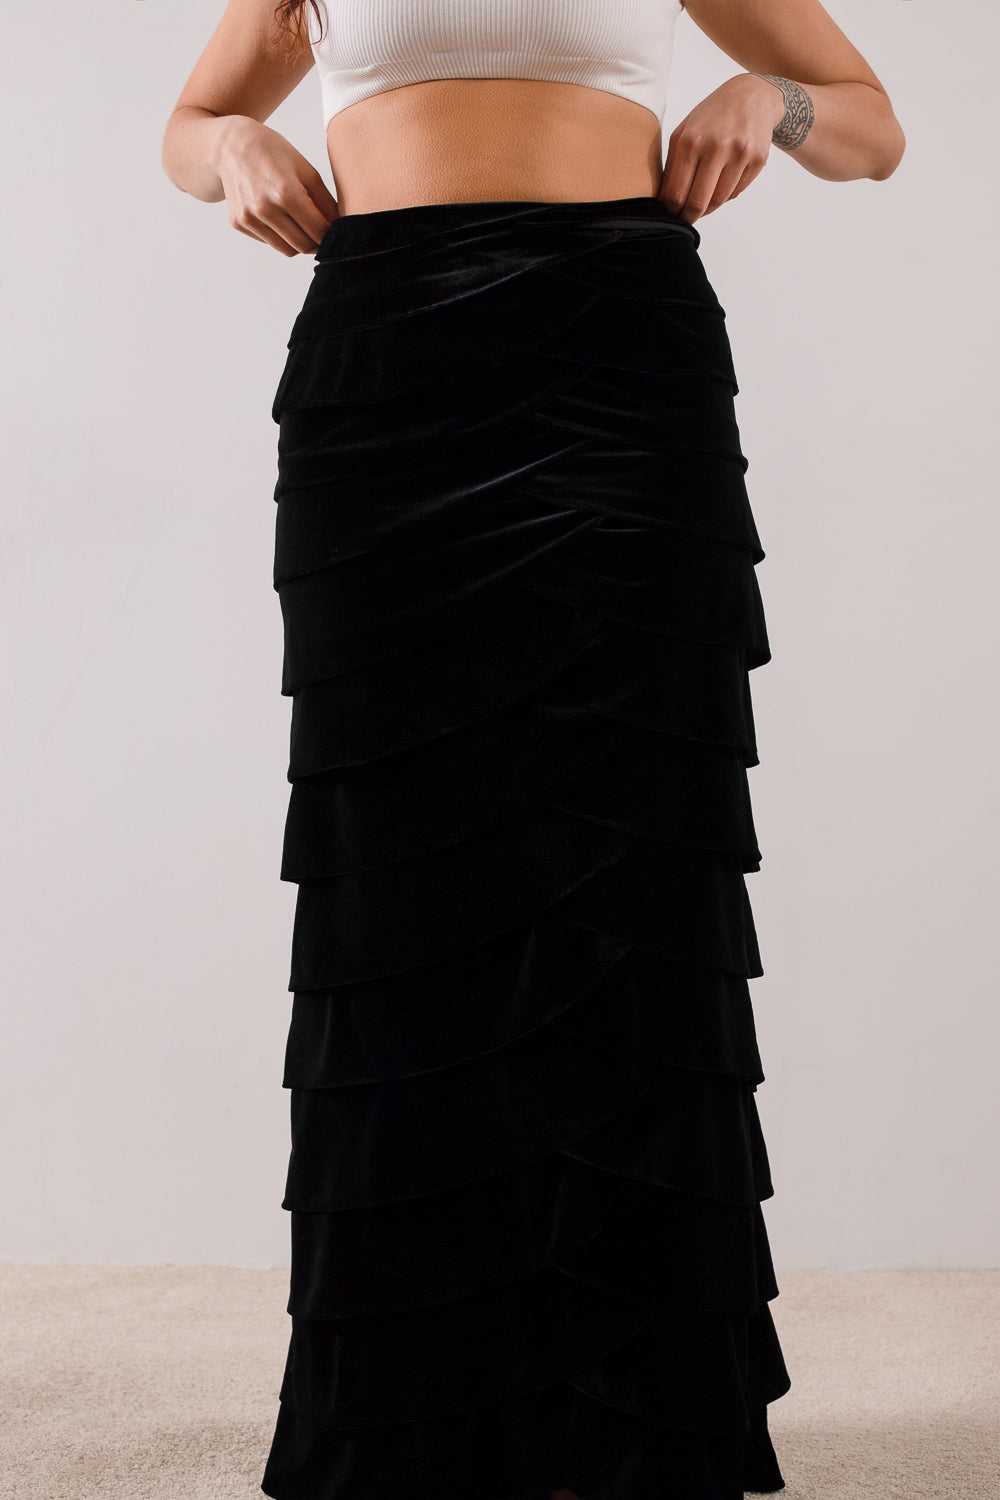 Black Velvet Tiered Maxi Skirt / Size 8 - image 4